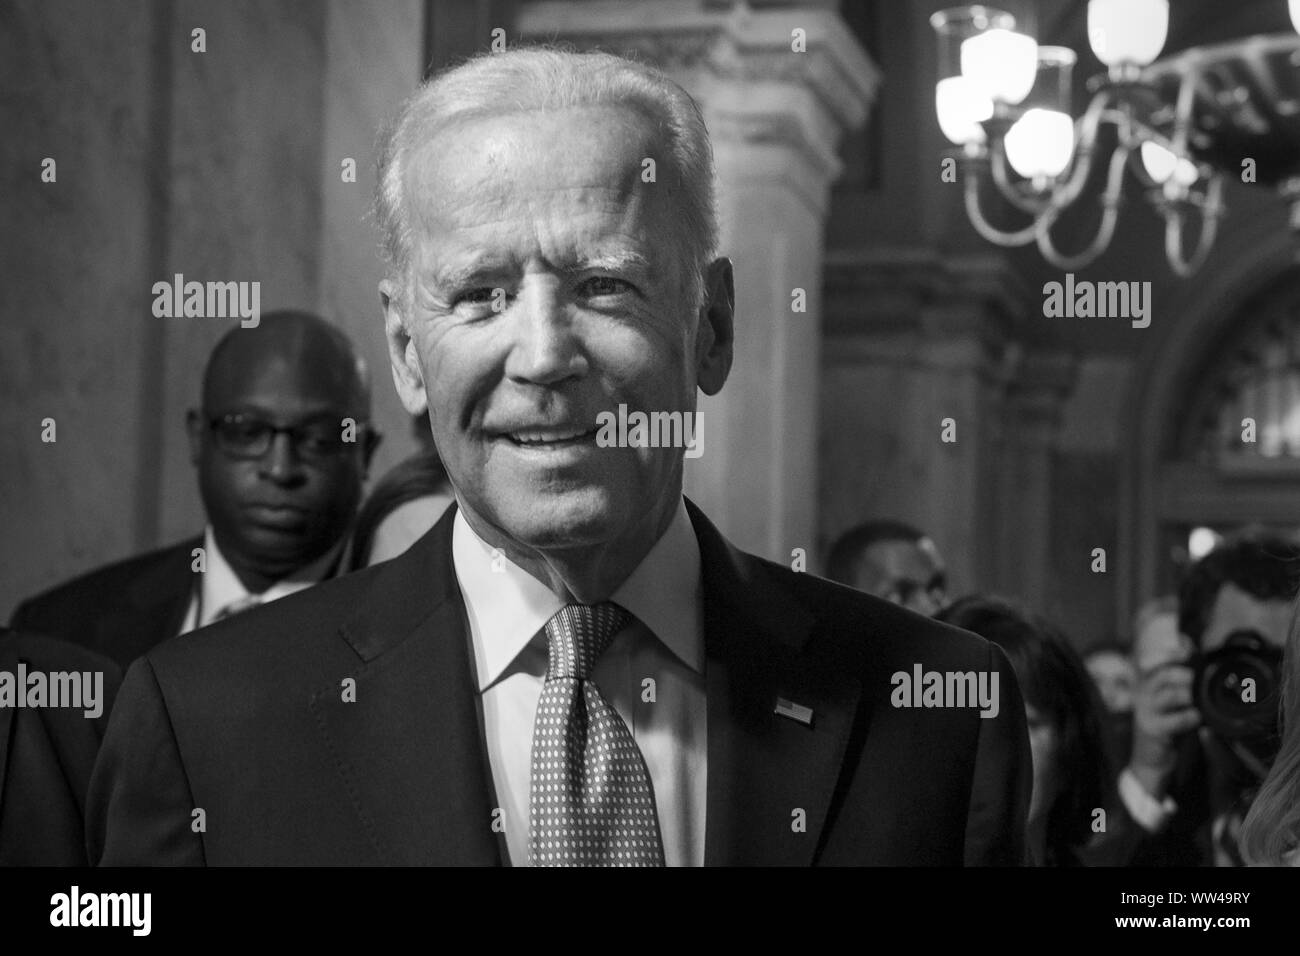 Us-Vizepräsident Joe Biden am 58. Präsidentschafts-einweihung in Washington, D.C., 20. Januar 2017. Stockfoto